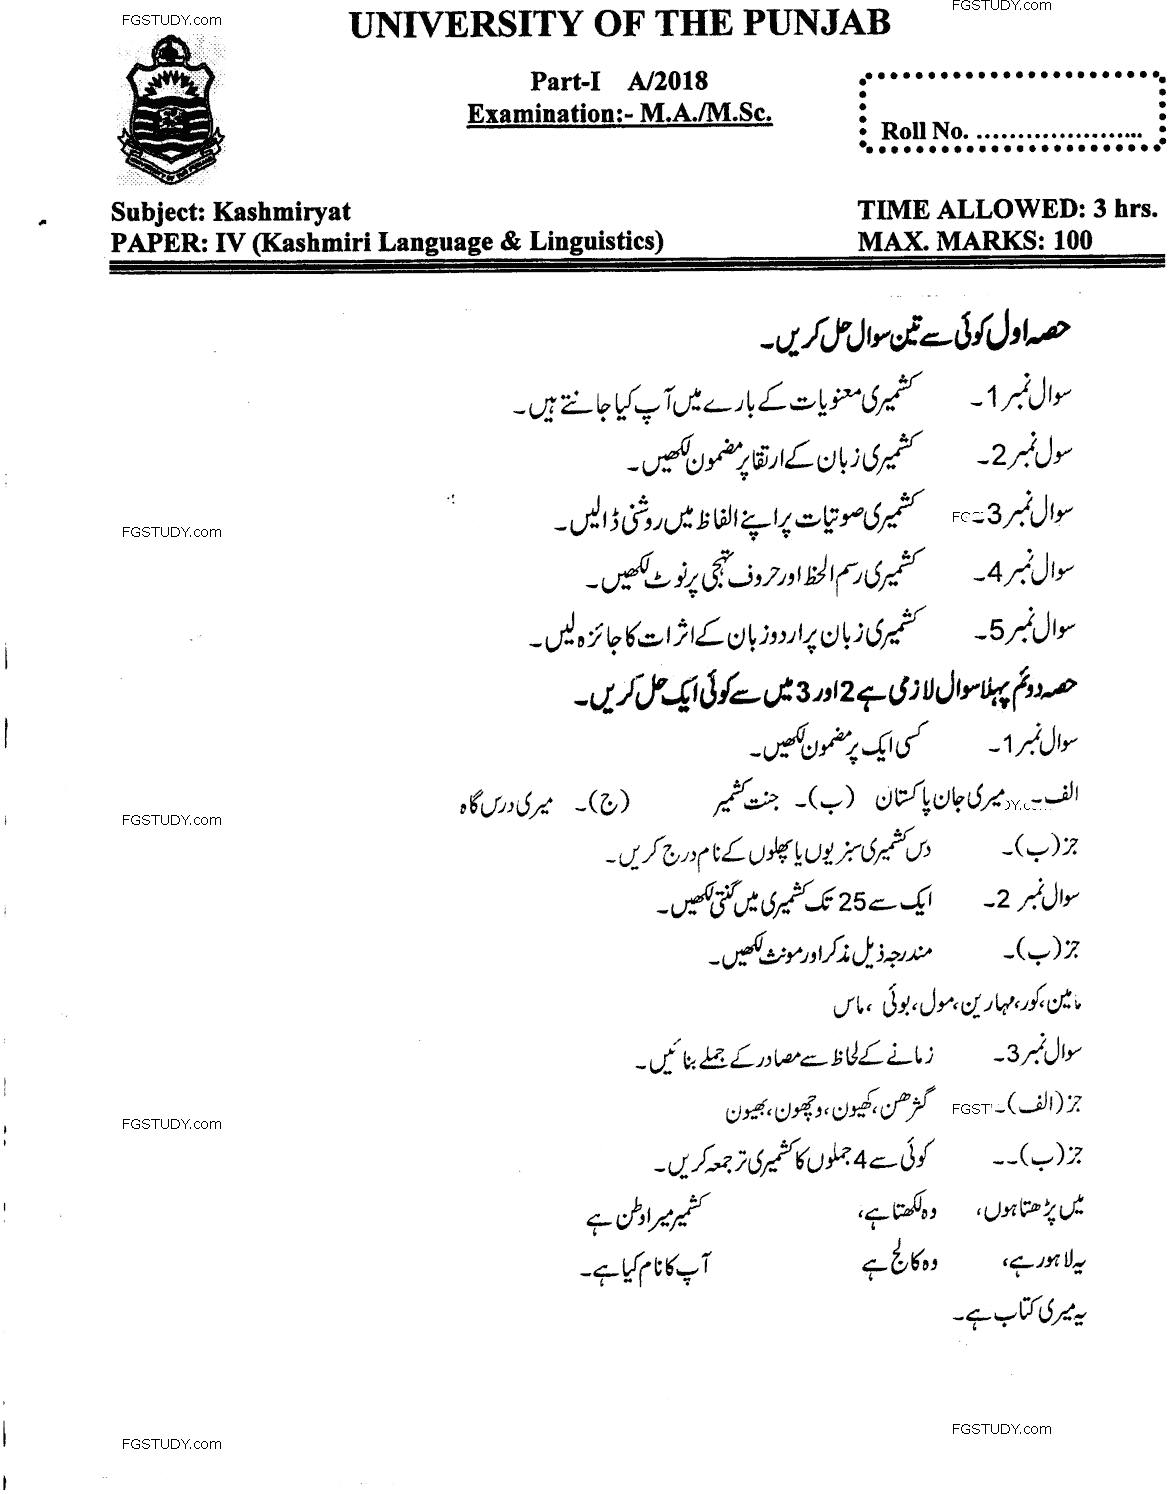 Ma Part 1 Kashmiriyat Kashmiri Language And Linguistics Past Paper 2018 Punjab University